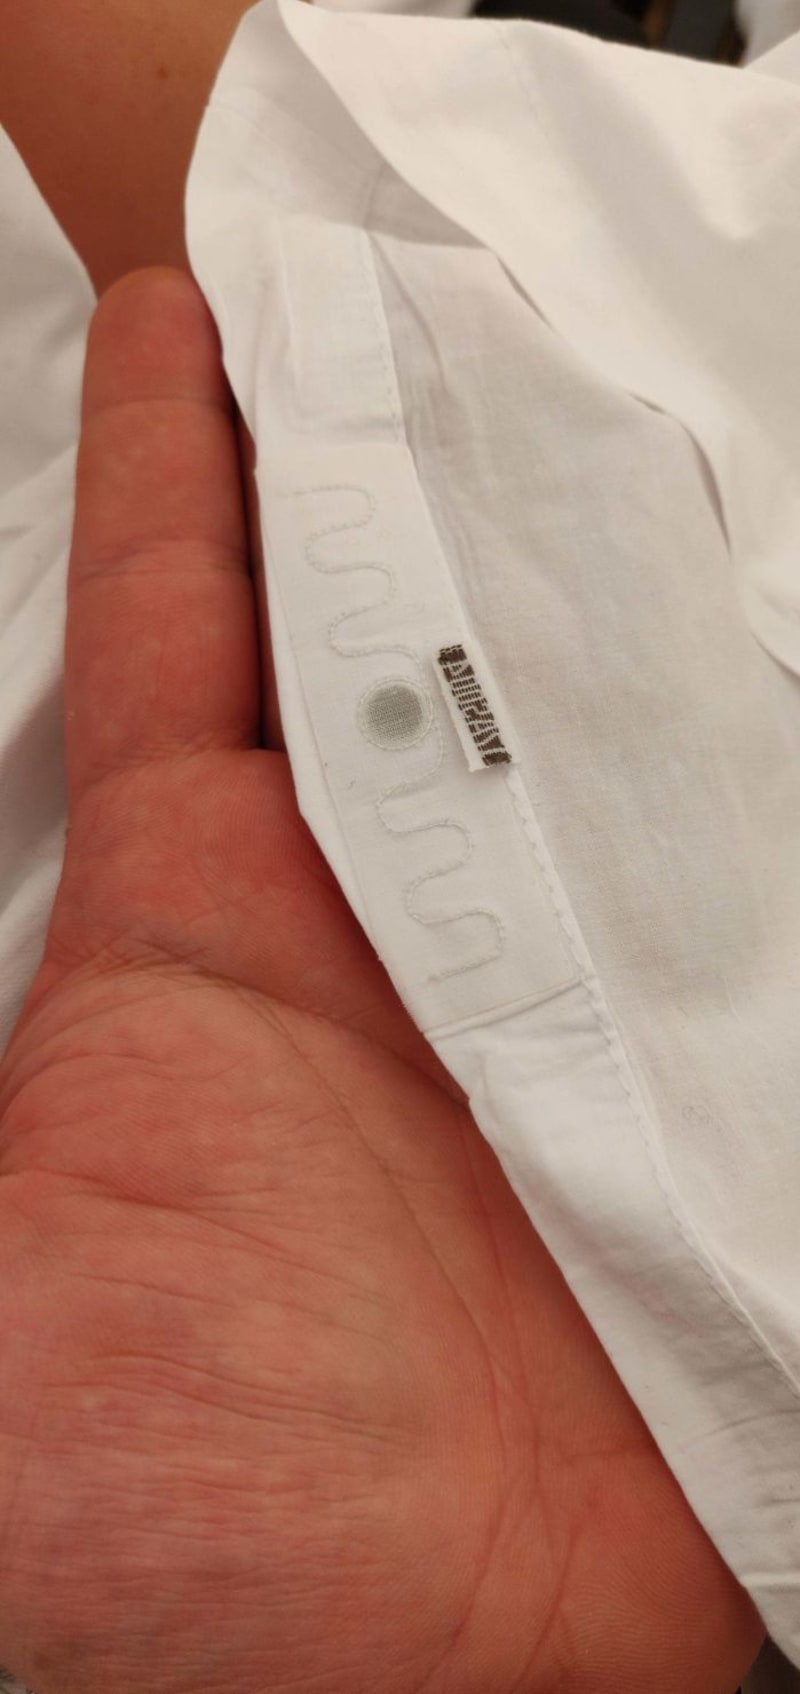 Divná věc všitá do hotelového povlečení - Pravděpodobně jde o RFID čip sloužící k identifikaci povlečení v průmyslových prádelnách.